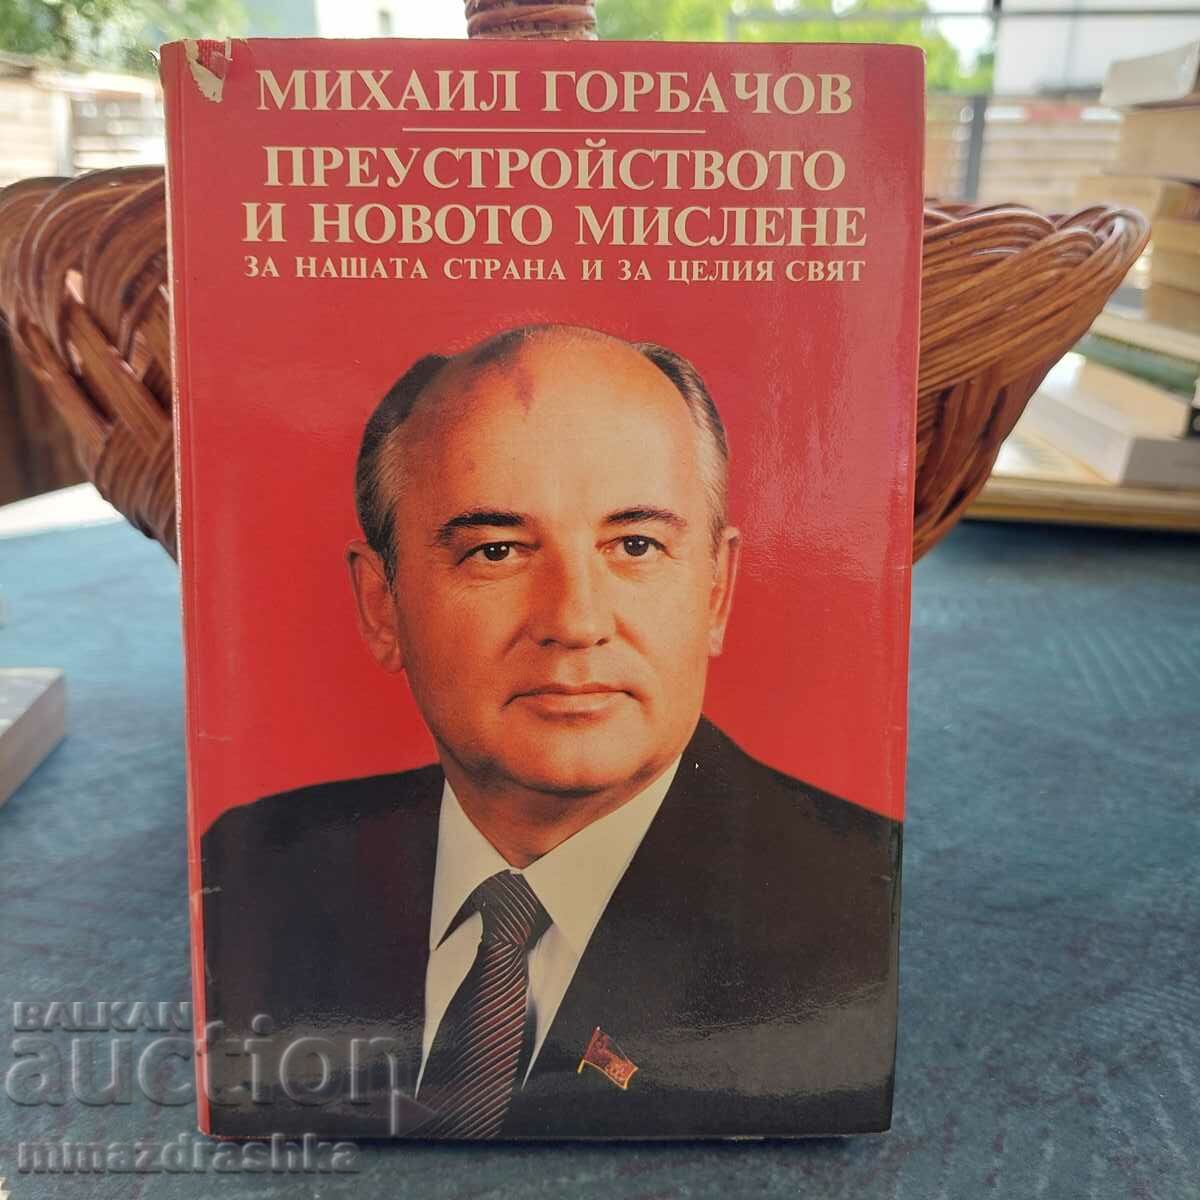 Ανασυγκρότηση και νέα σκέψη, Μ. Γκορμπατσόφ